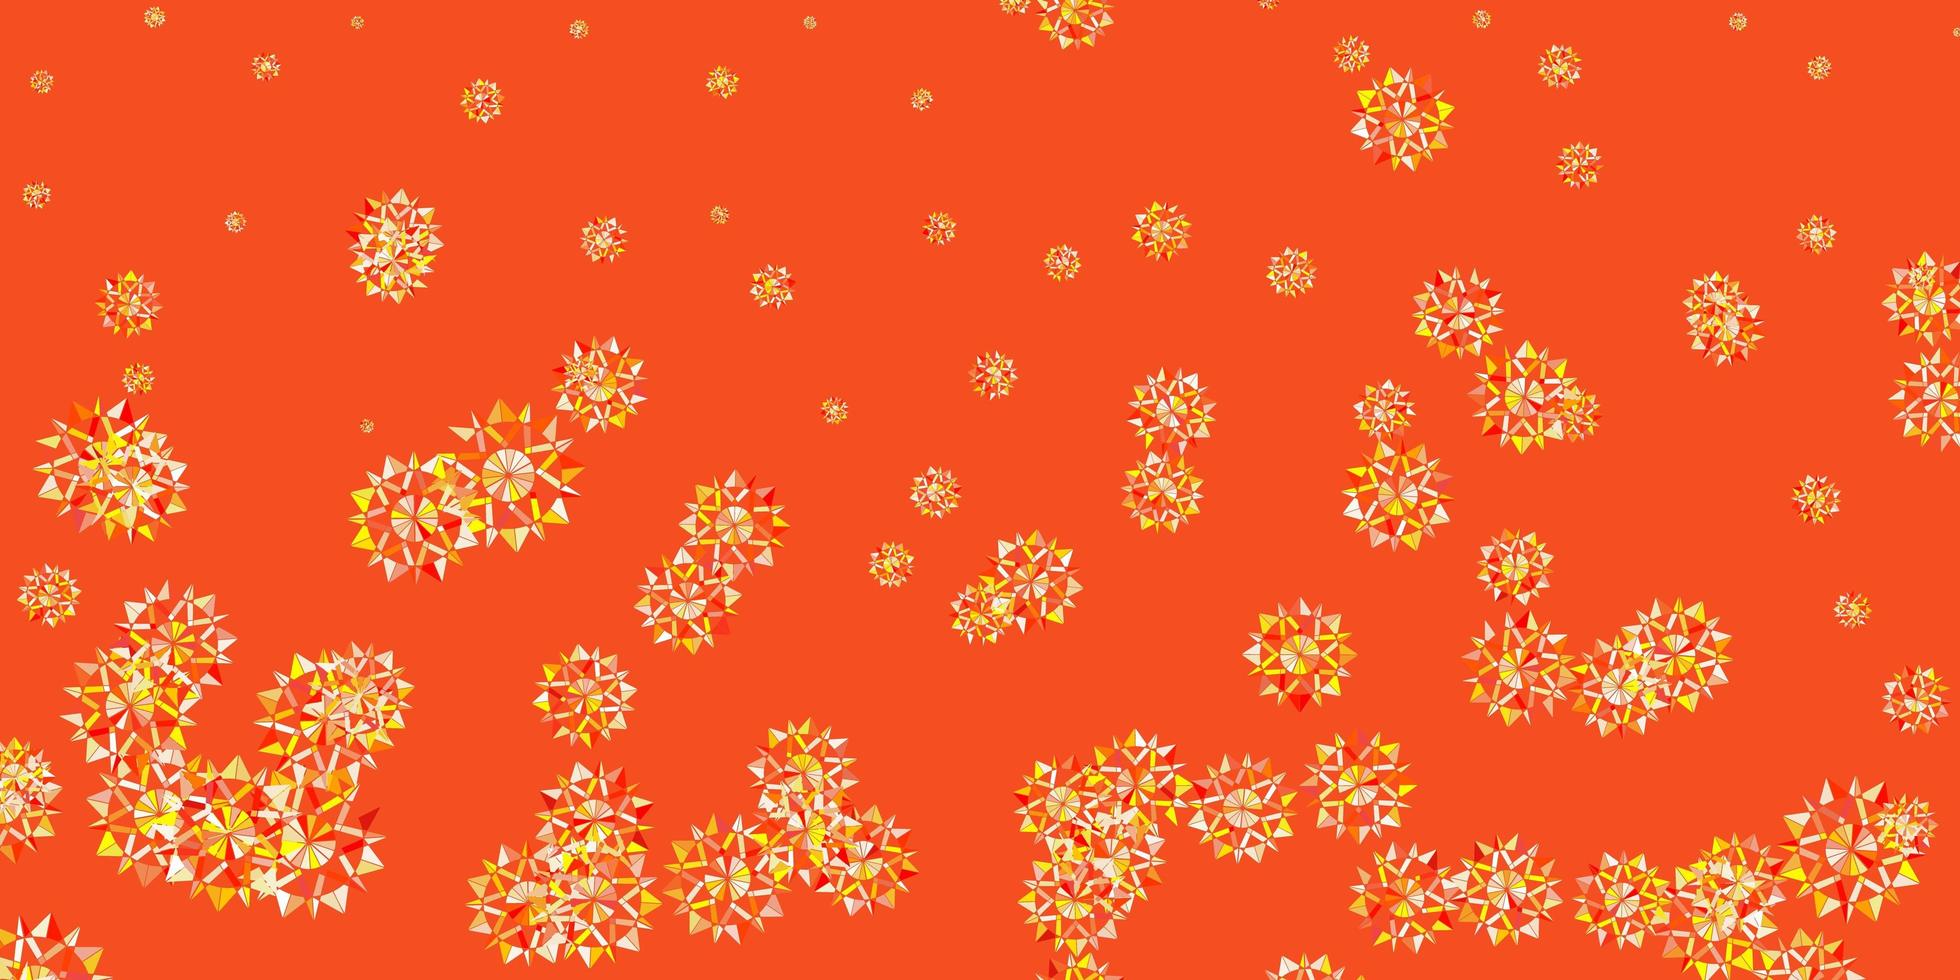 luz laranja vector lindo cenário de flocos de neve com flores.